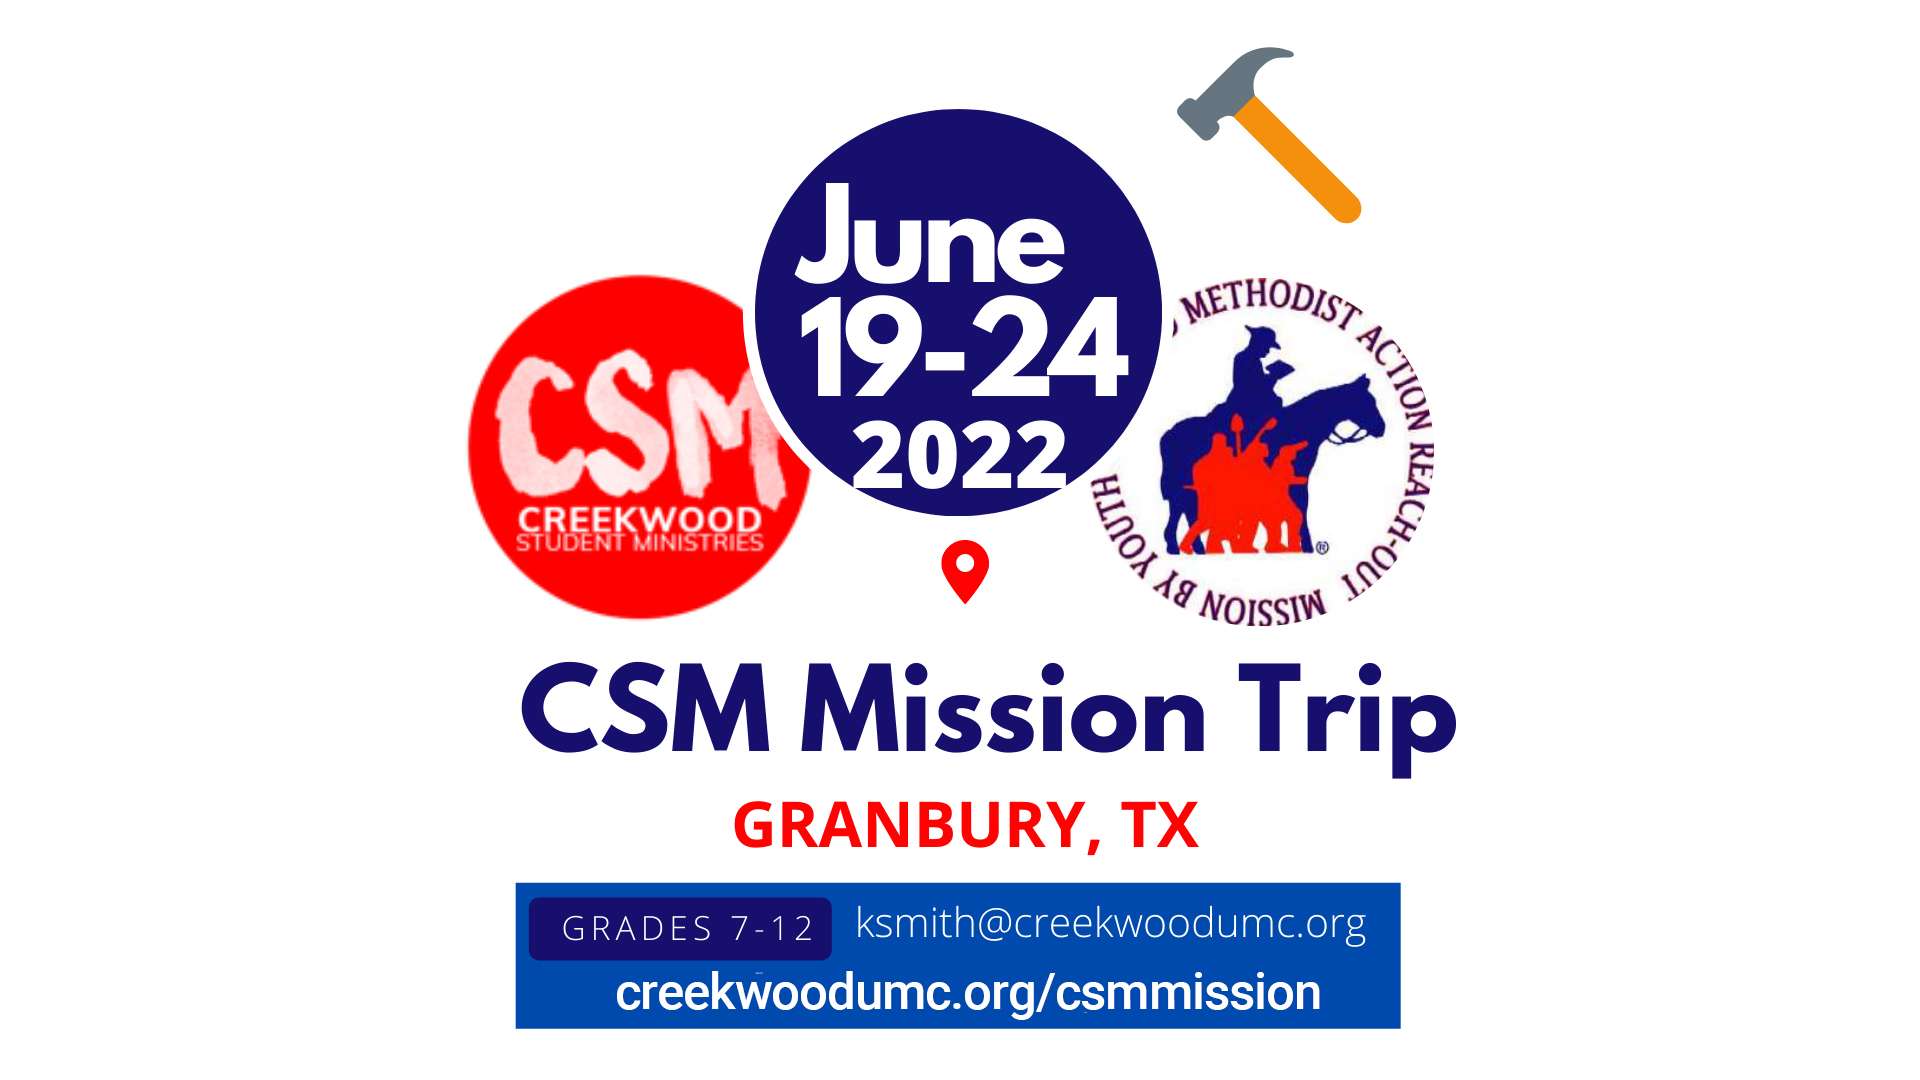 CreekwoodUMC - CSM Mission Trip